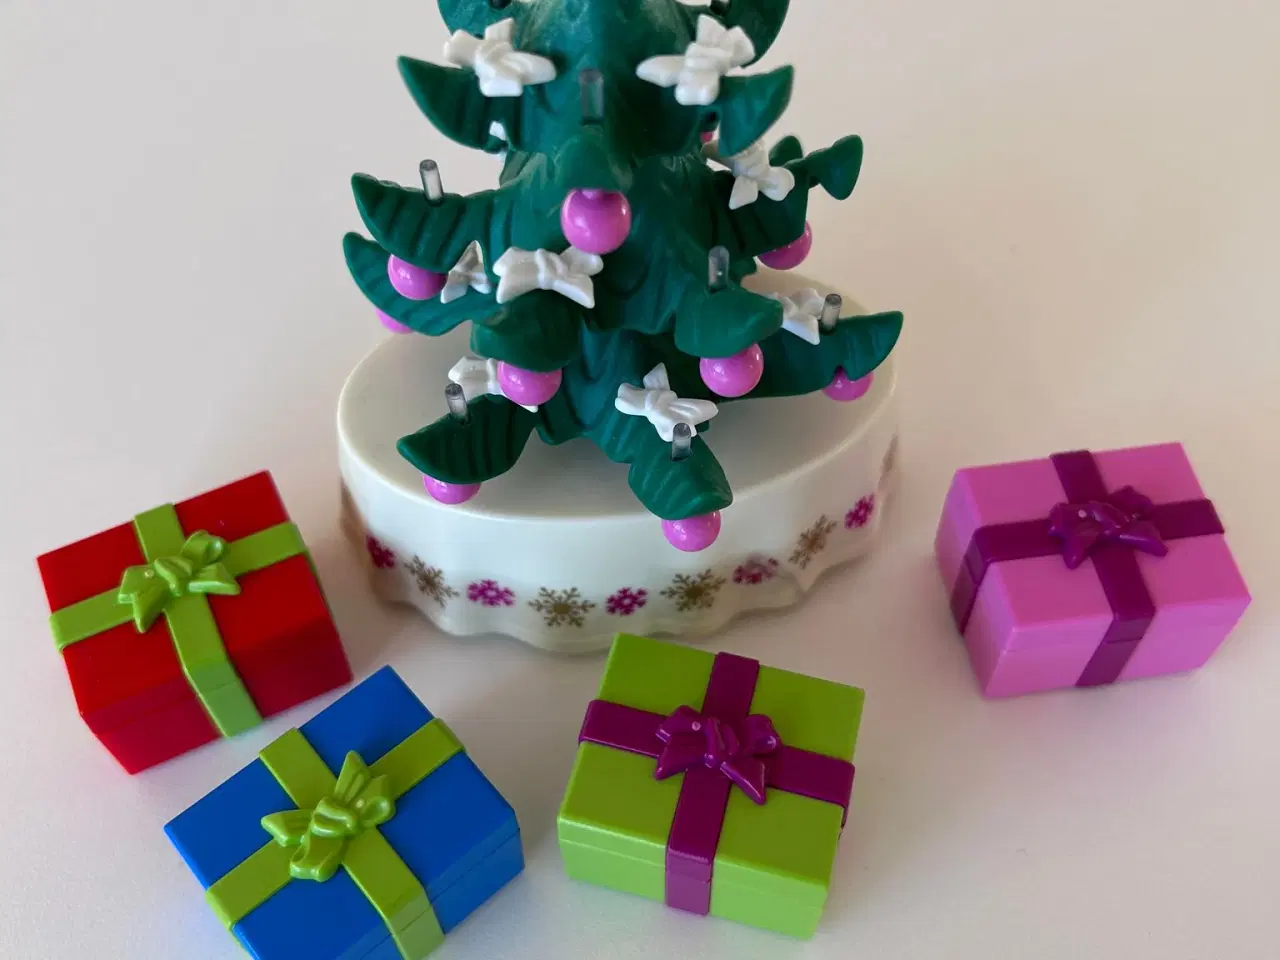 Billede 5 - Playmobil figurer og juletræ med gaver